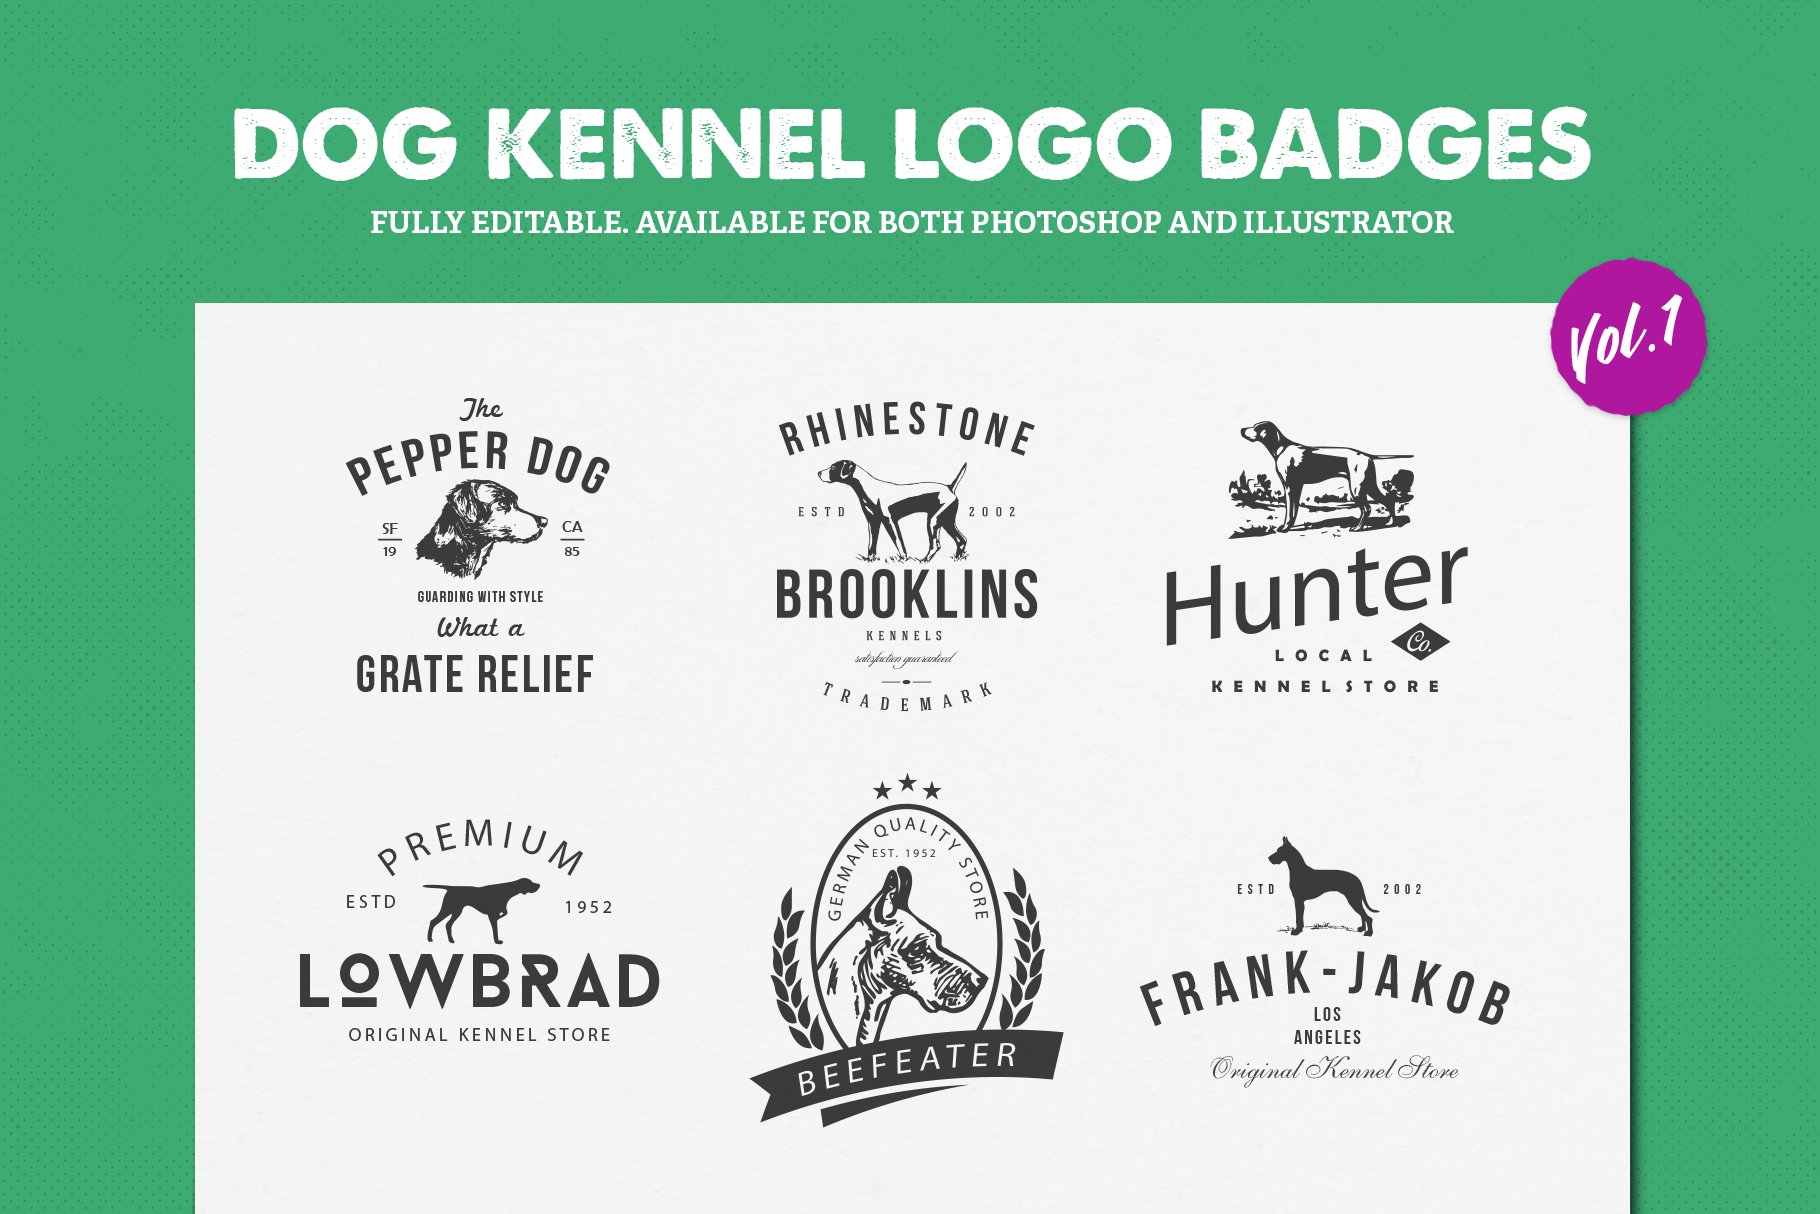 Dog Kennel Logo Badges cover image.